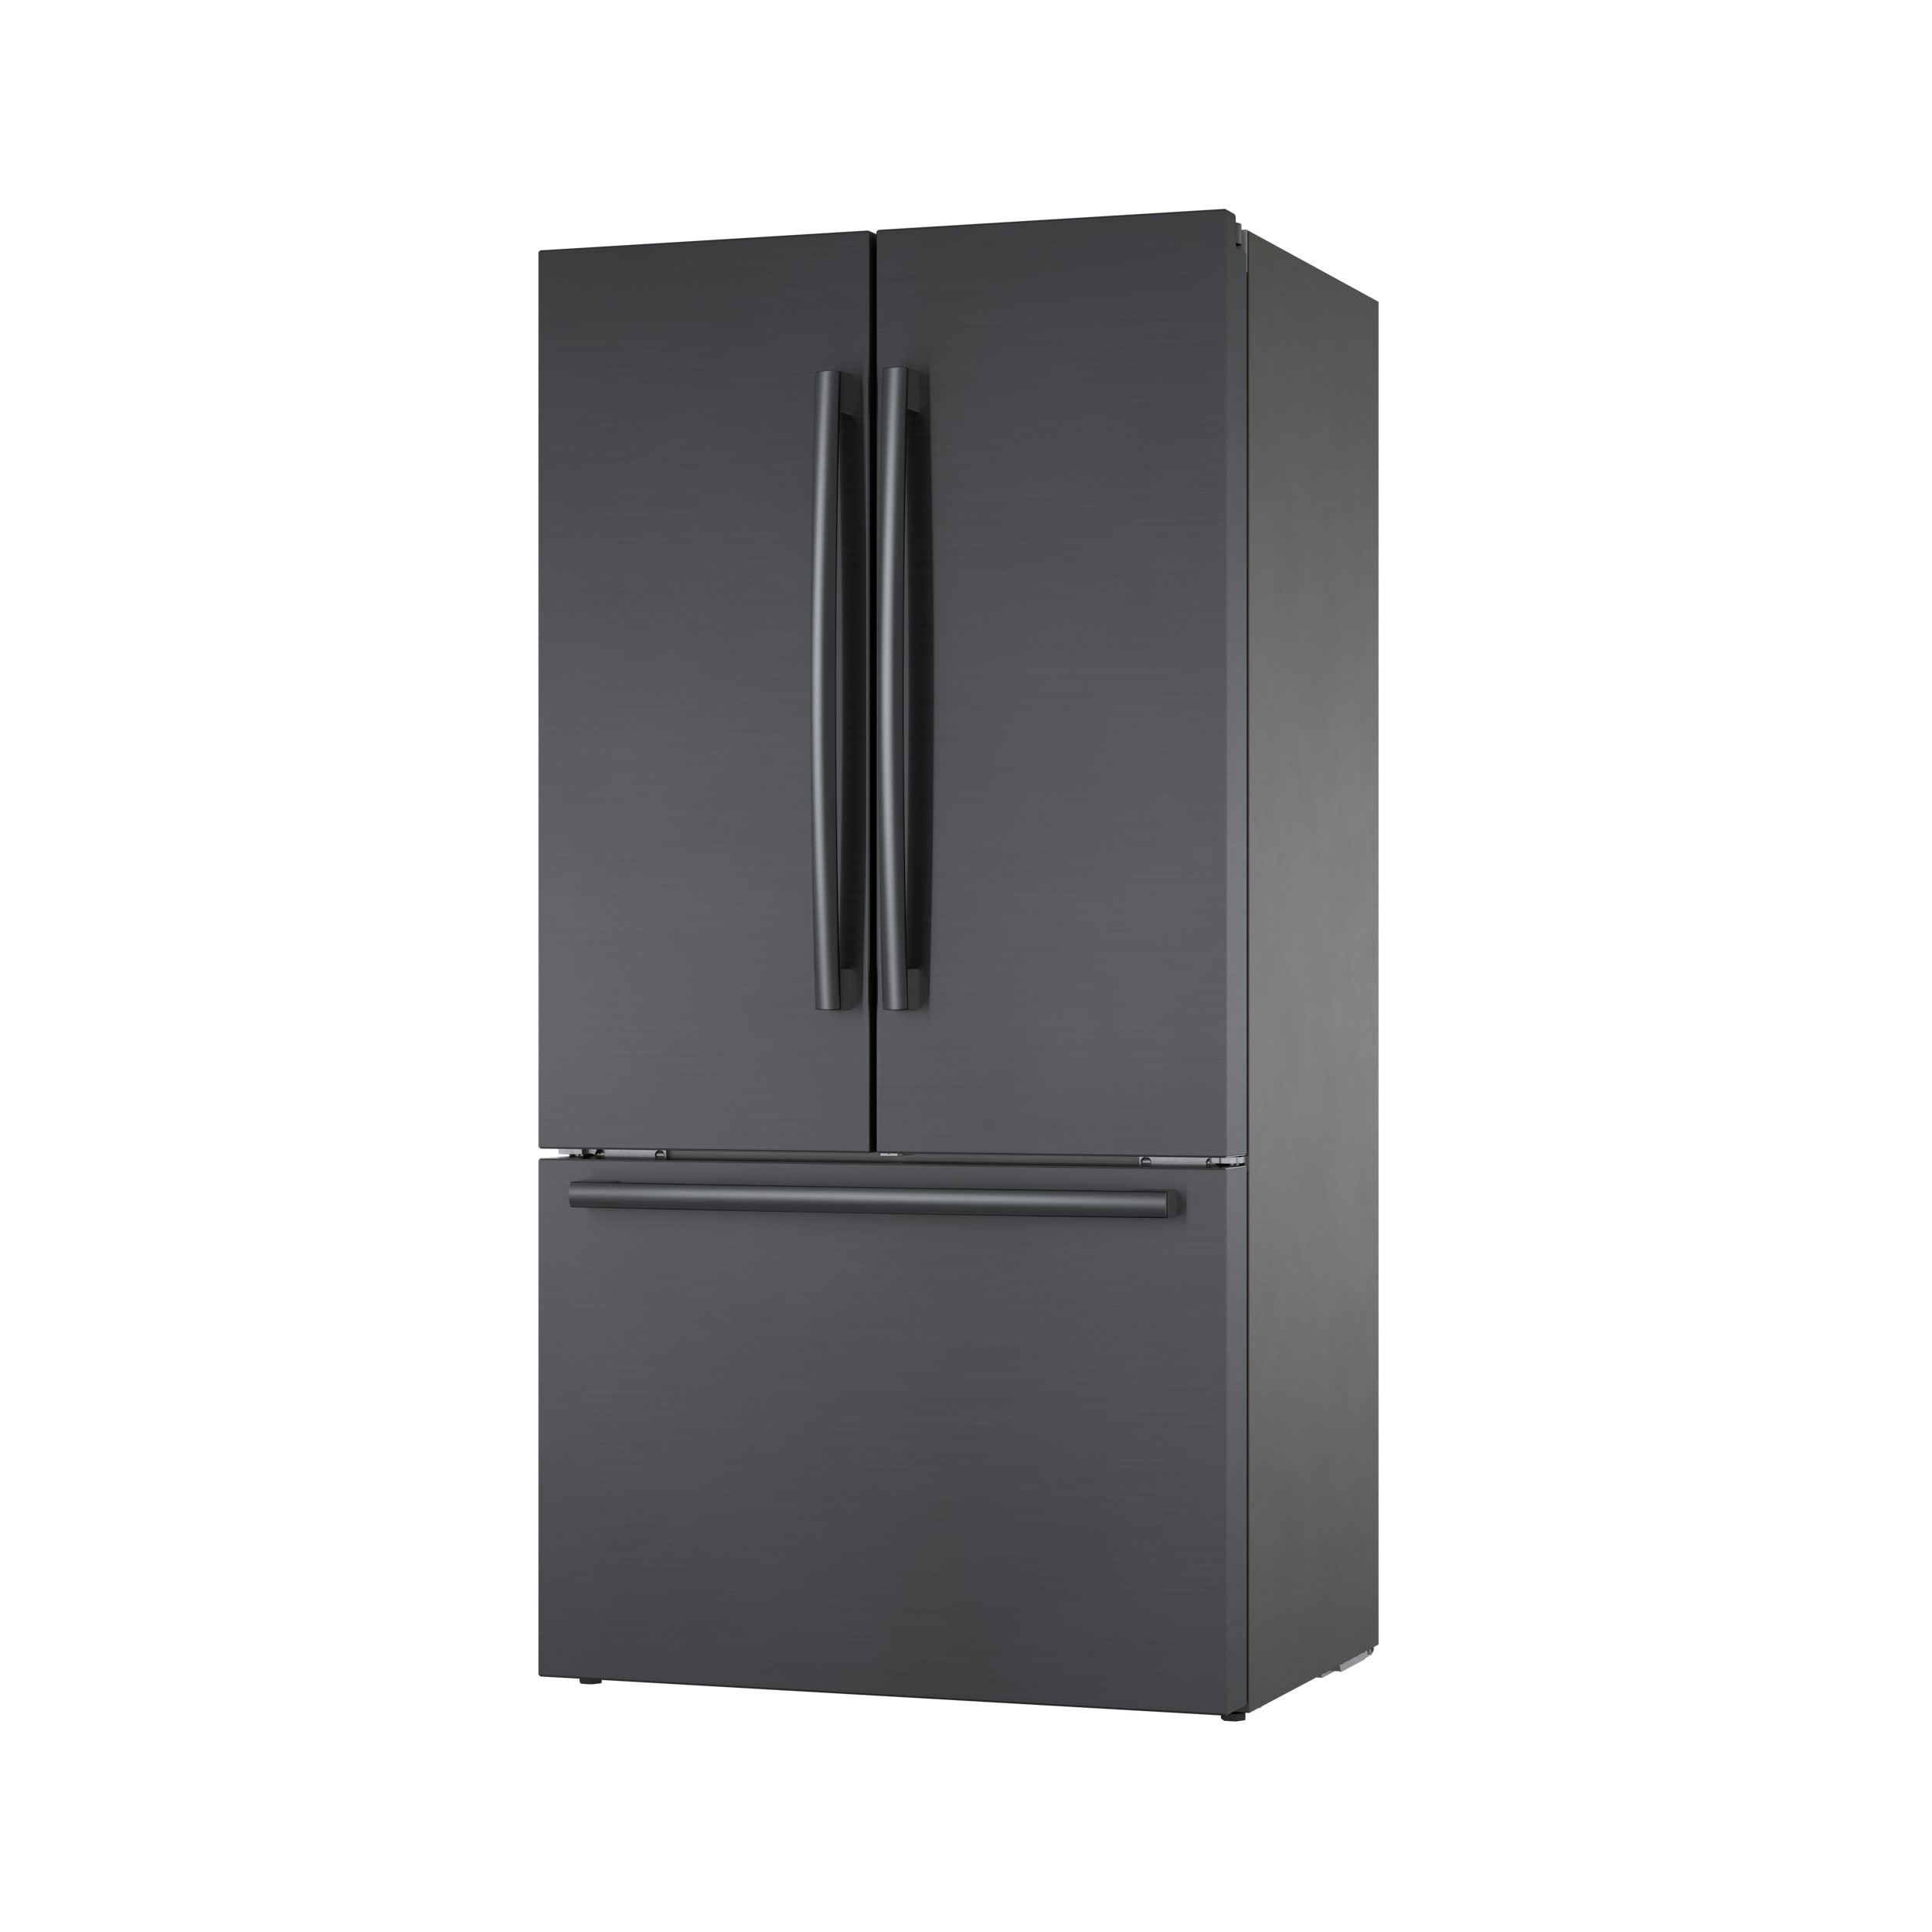 Bosch 800 Series 36 Black Stainless Steel 3-Door Counter Depth French Door Refrigerator